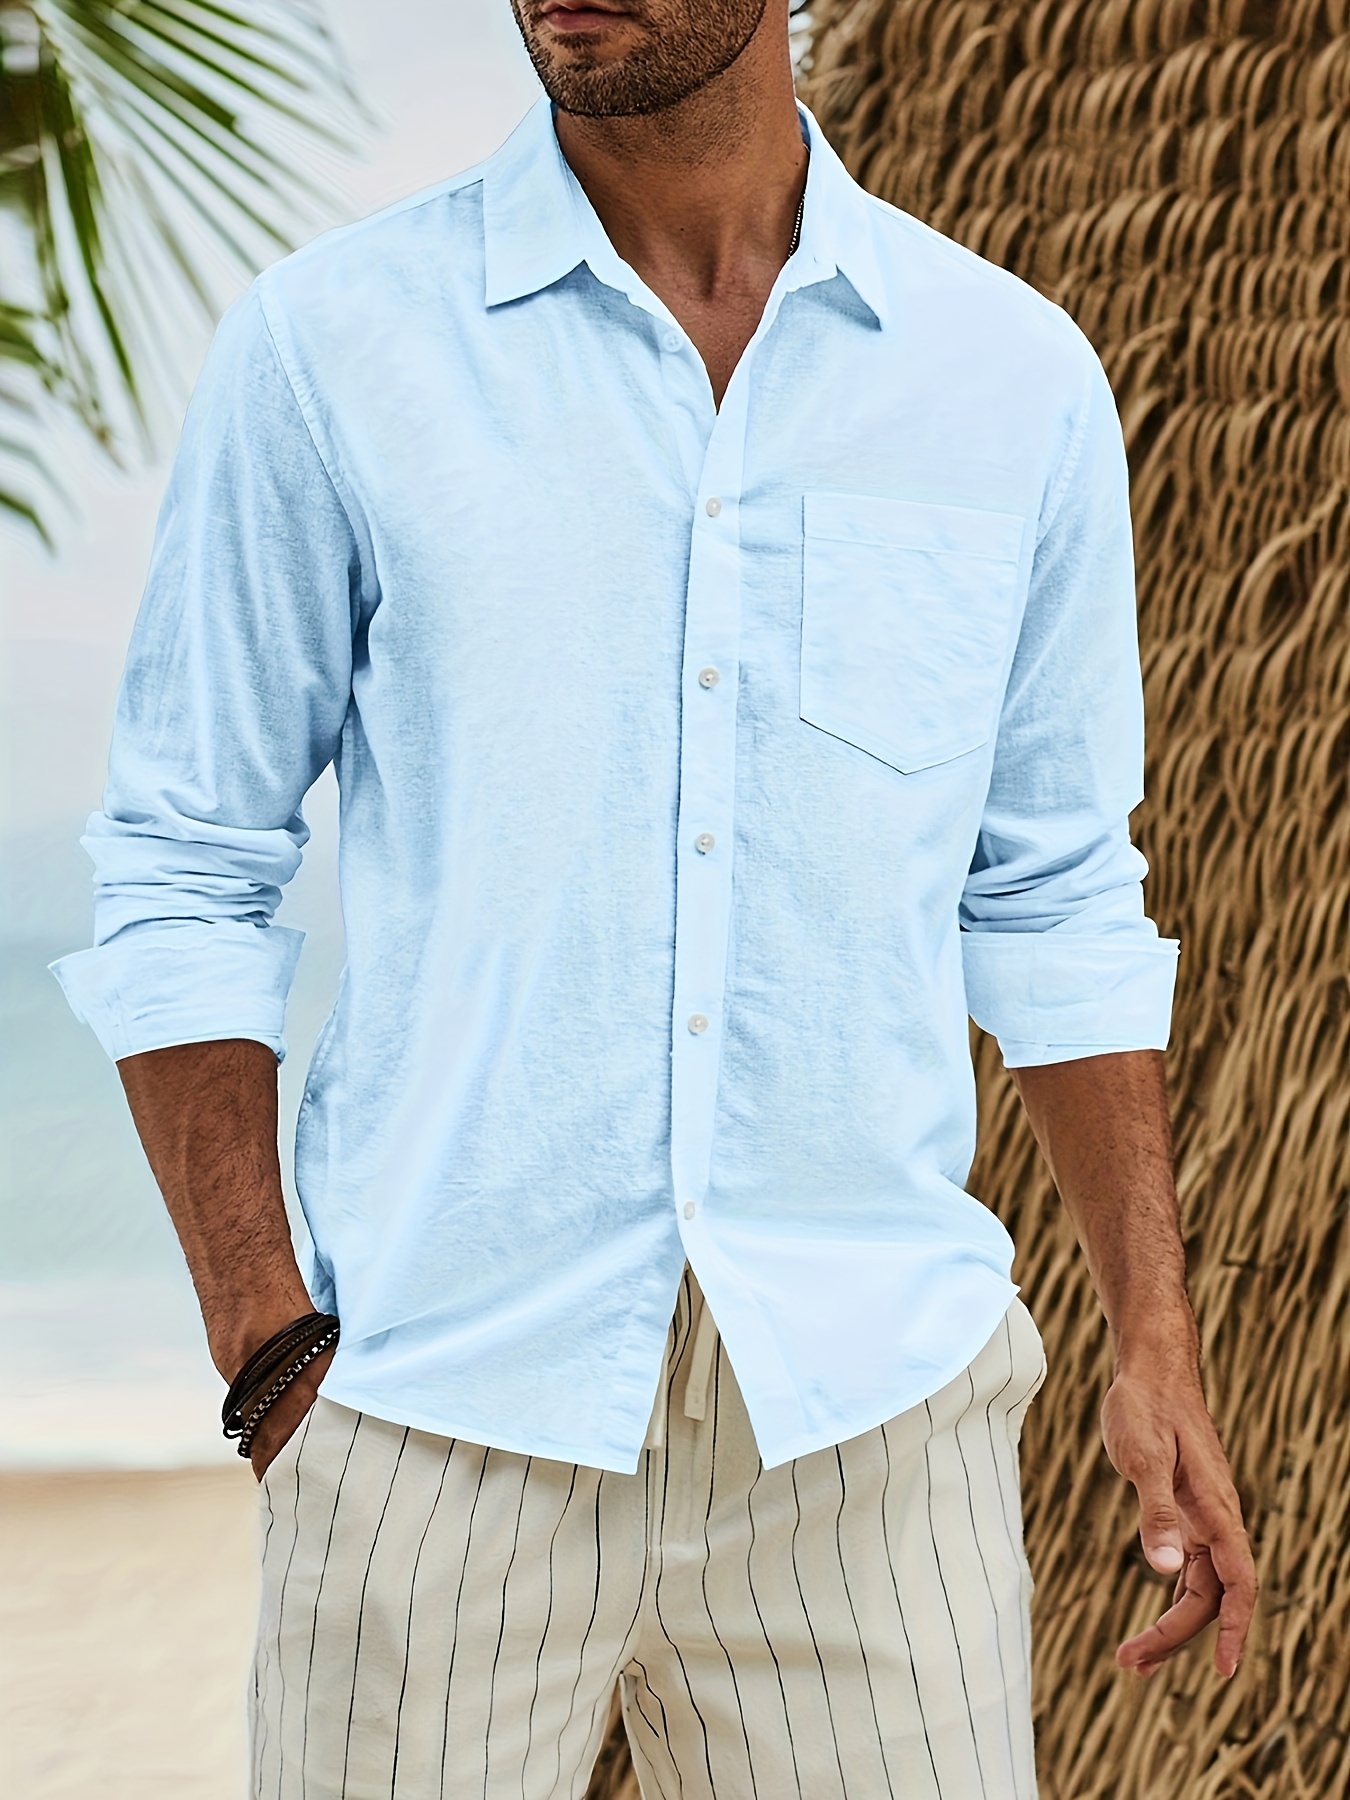 Men's Summer Linen-Blend Button-Up Shirt, Men's Tops